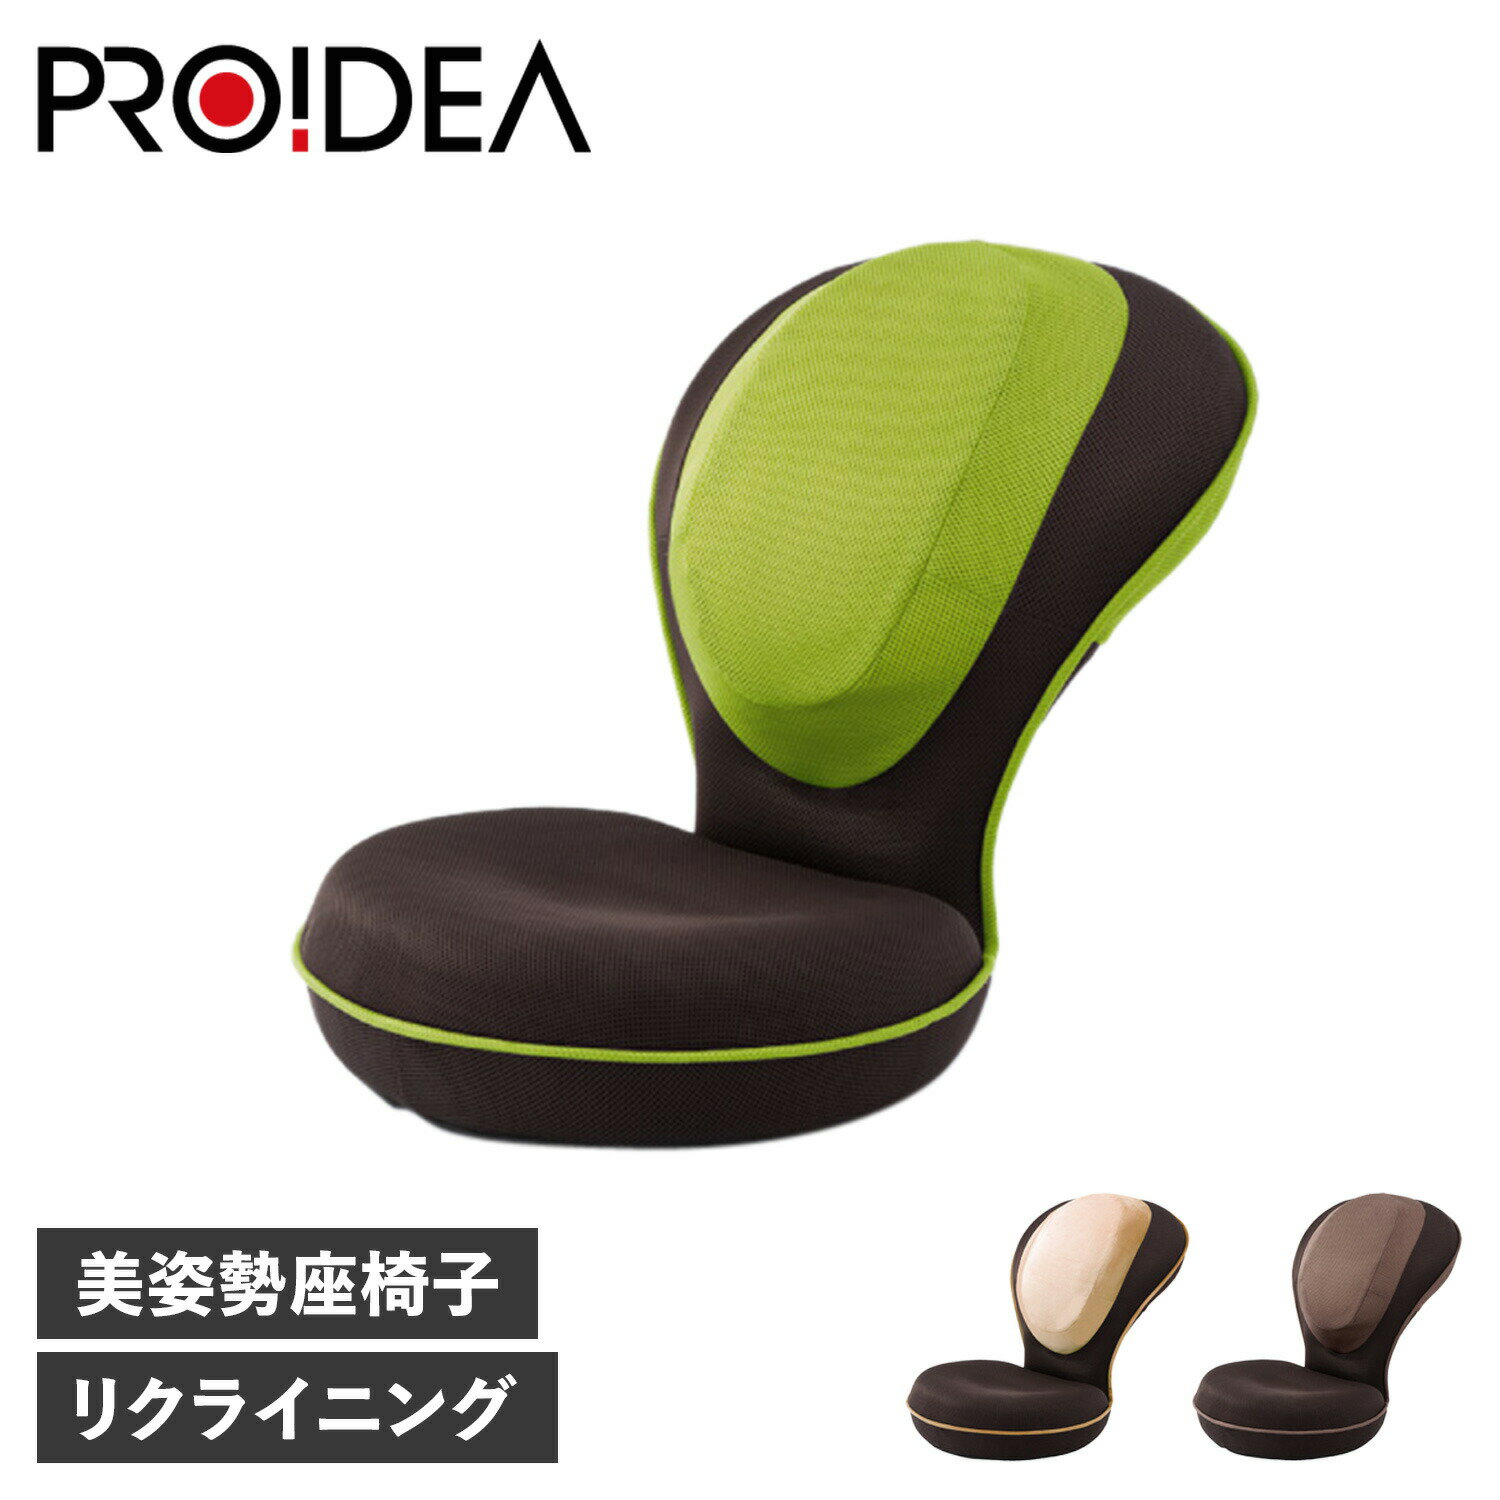 PROIDEA 背筋がGUUUN 美姿勢 プロイデア 座椅子 椅子 メンズ レディース コンパクト リクライニング ベージュ ブラウン グリーン